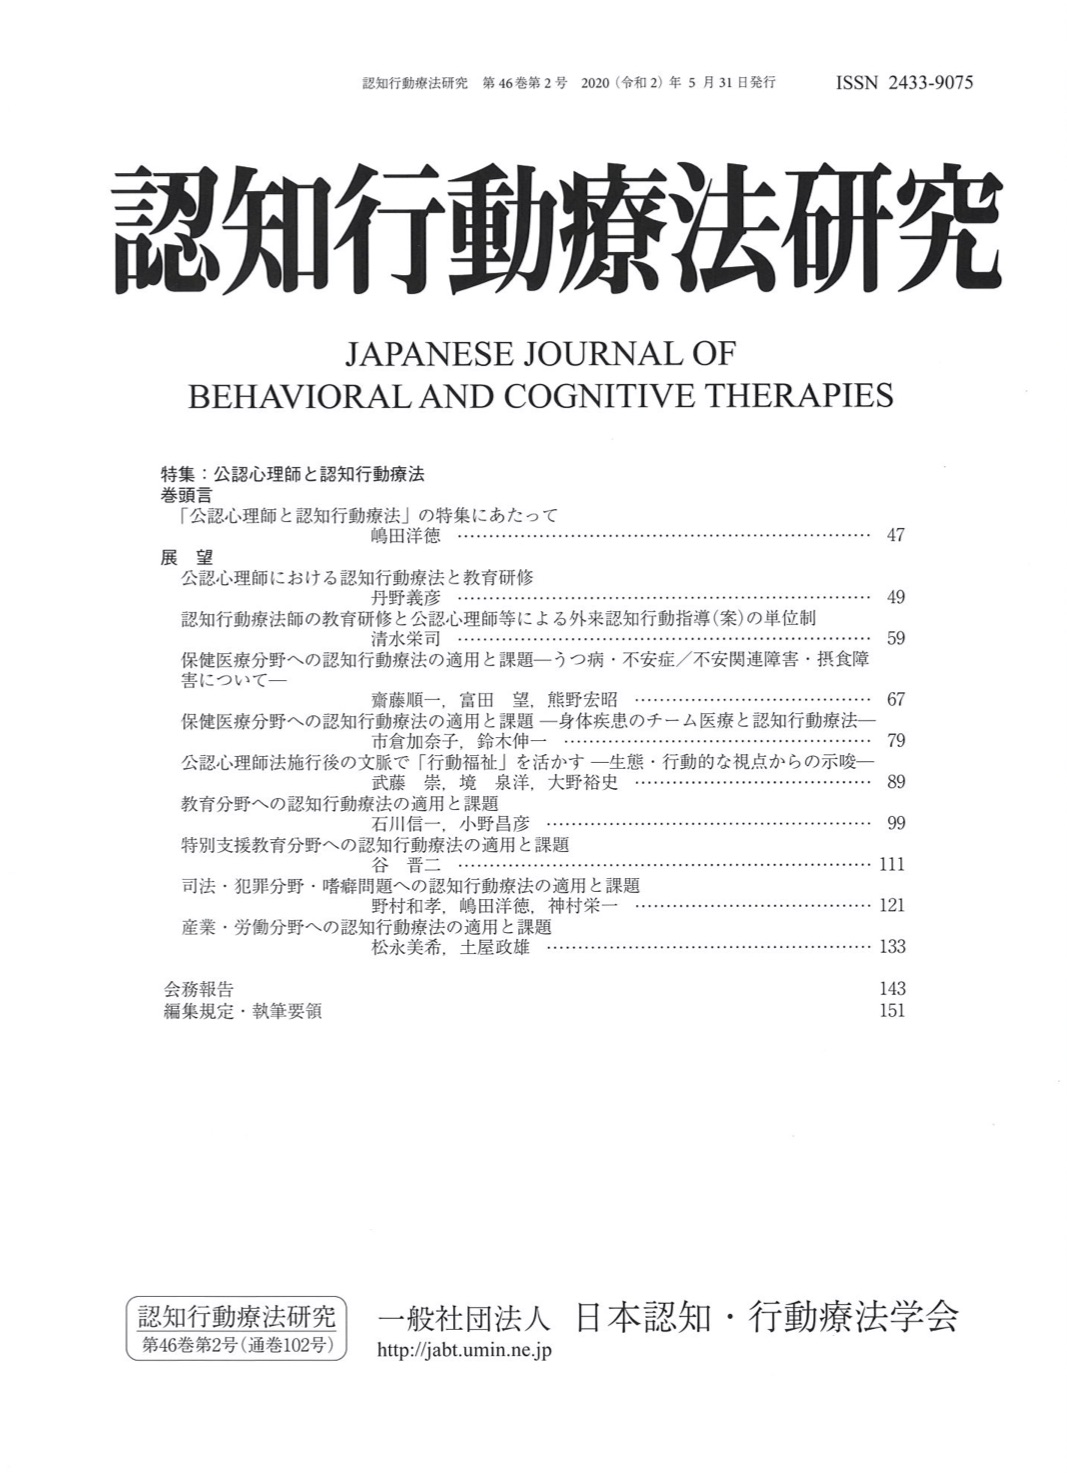 認知行動療法とは | 一般社団法人 日本認知・行動療法学会